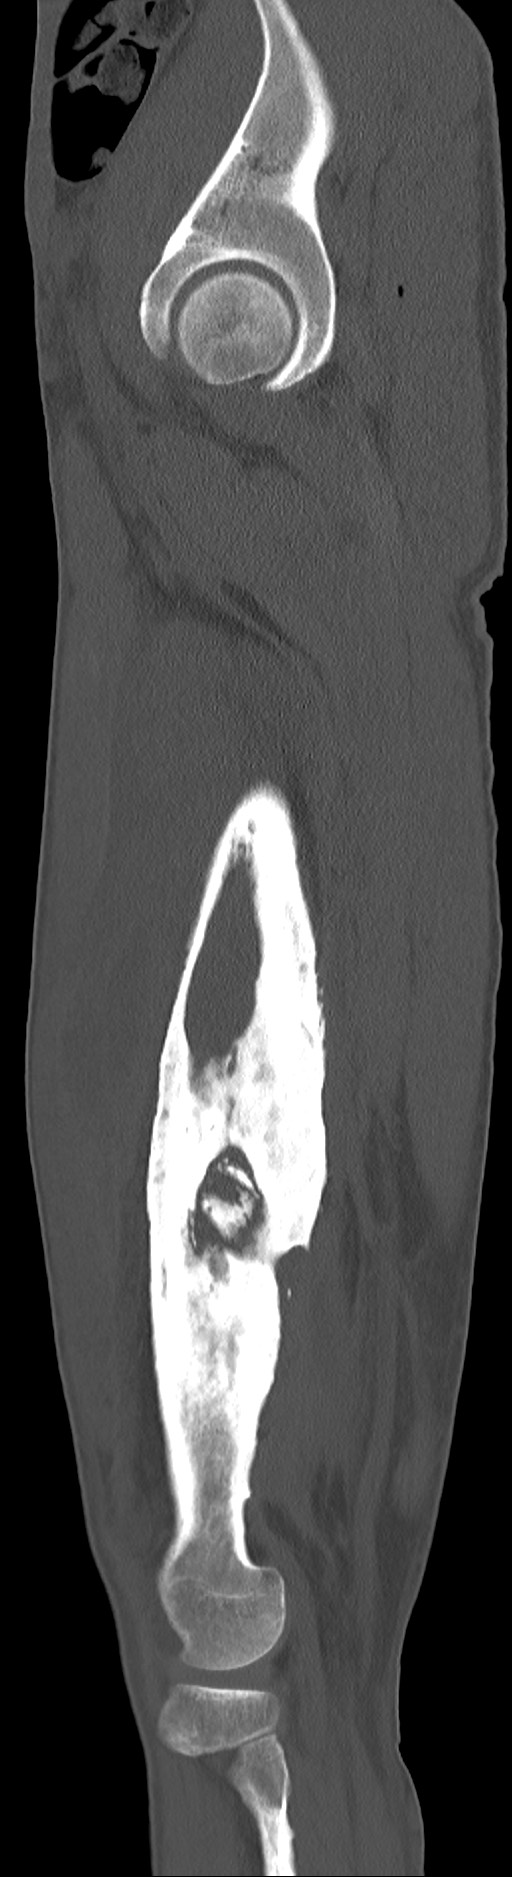 Chronic osteomyelitis (with sequestrum) (Radiopaedia 74813-85822 C 81).jpg